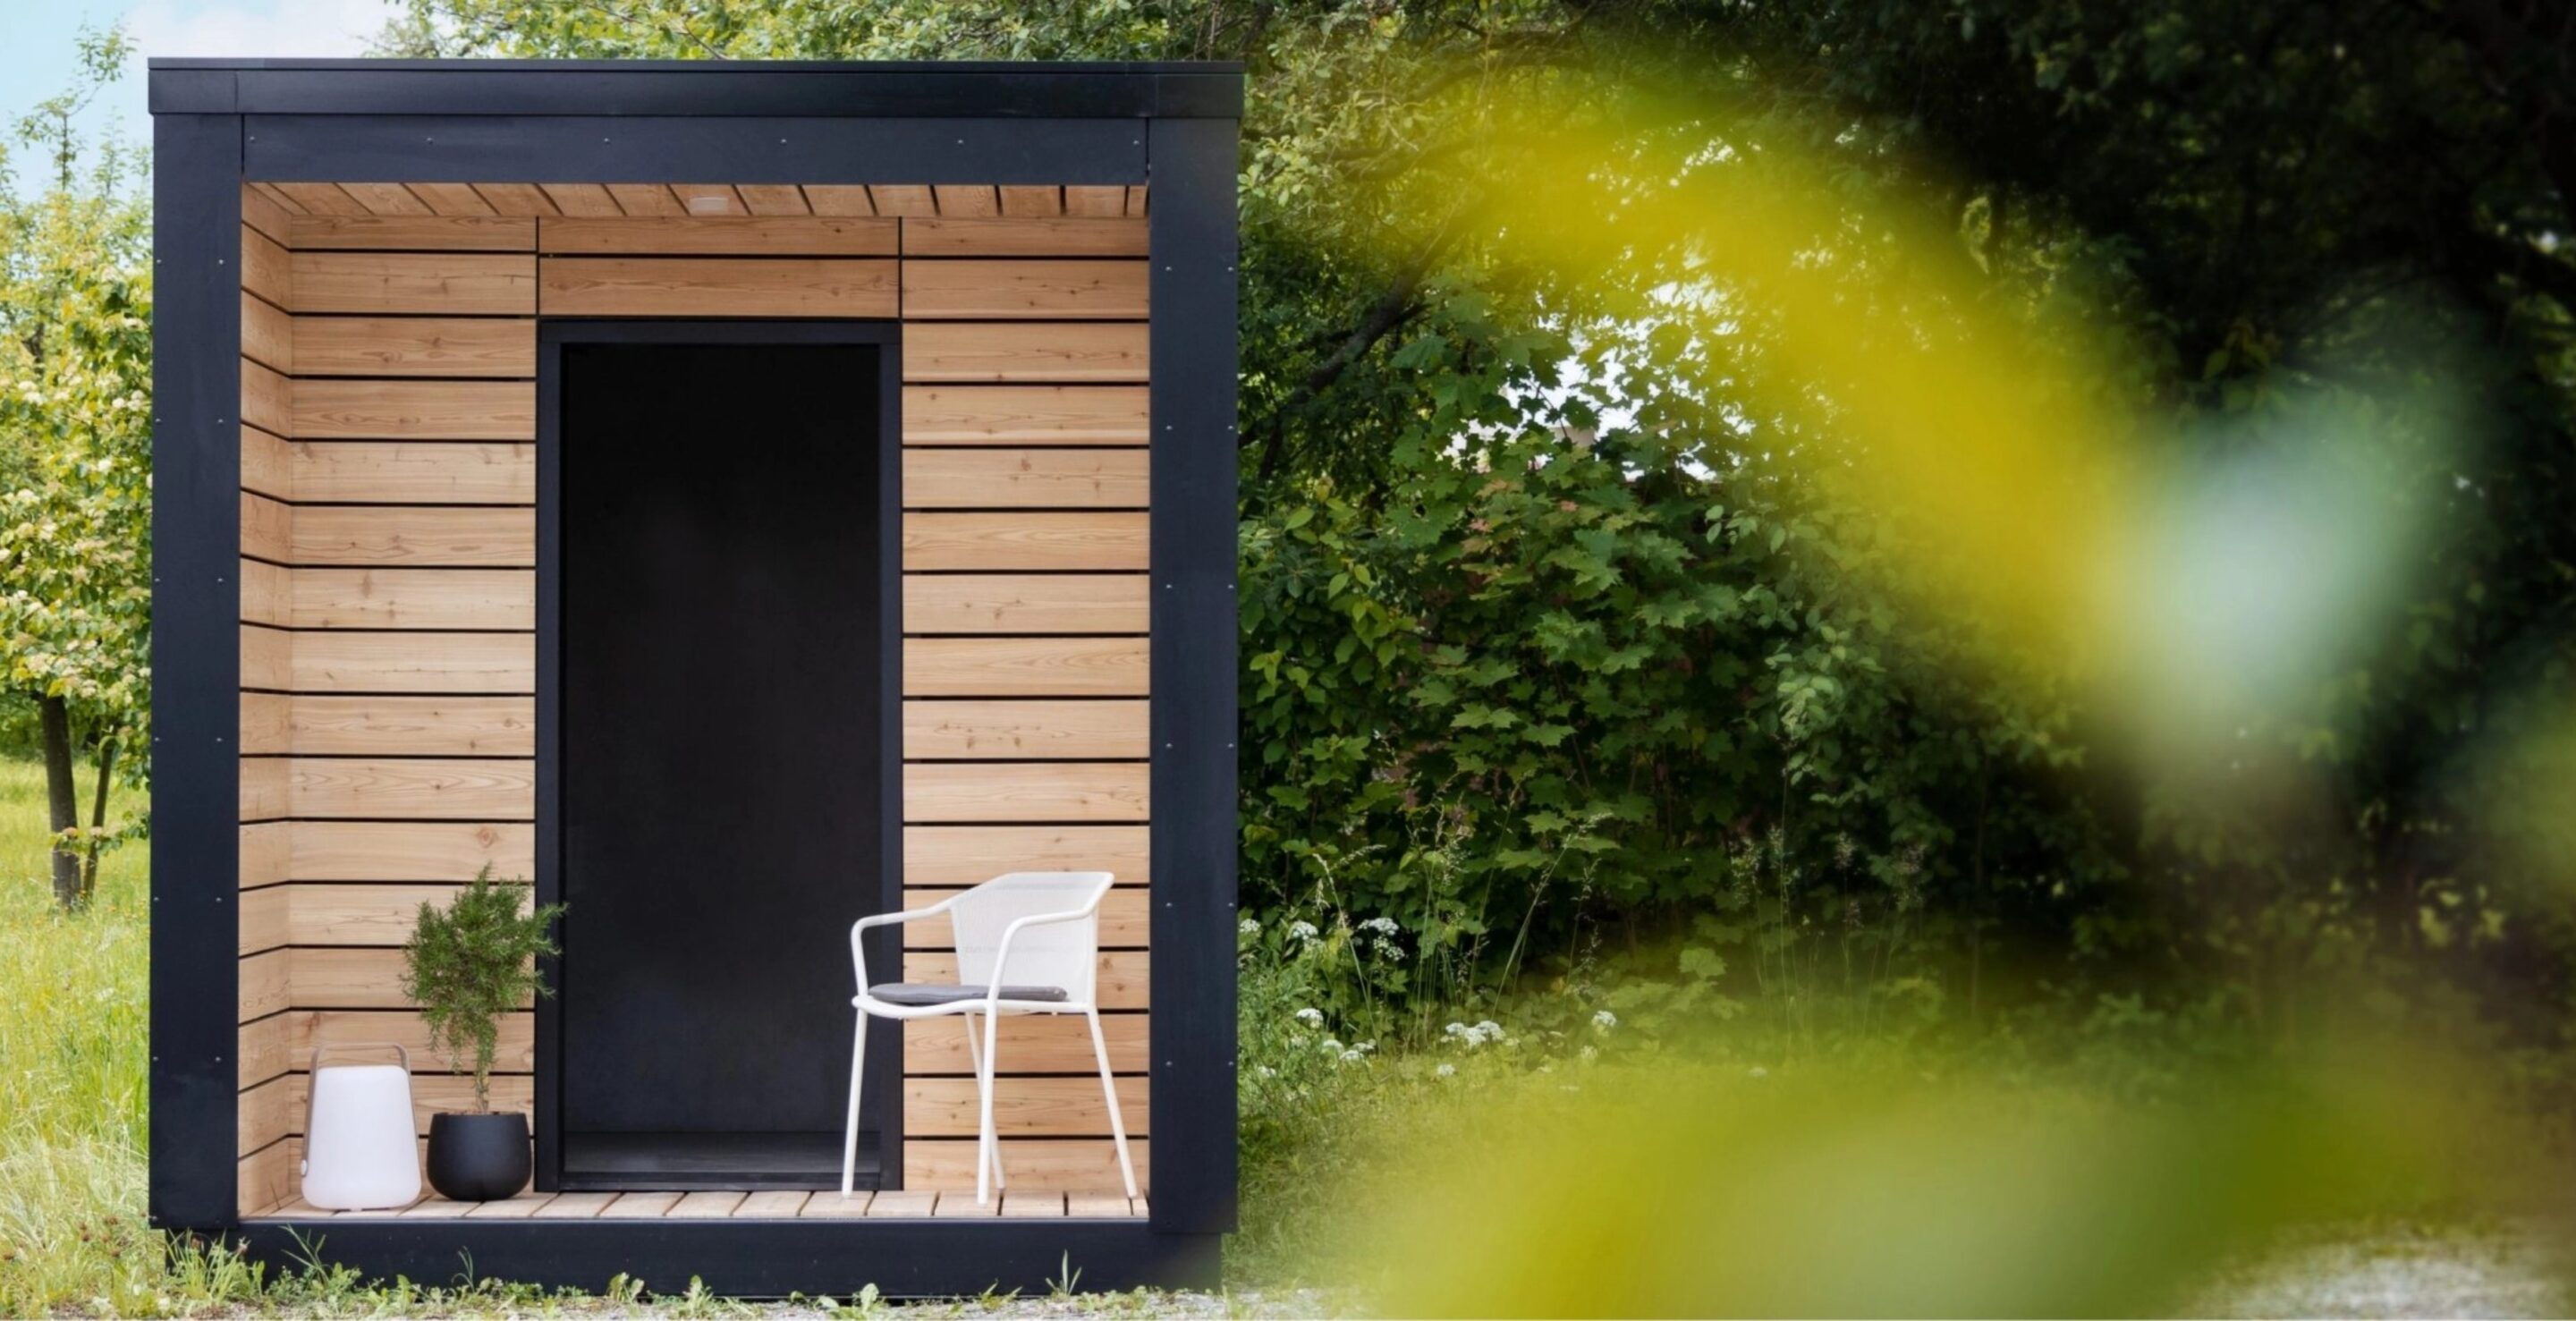 Der Bad Container tinyblue besticht von aussen durch sein modernes Holz-Design.